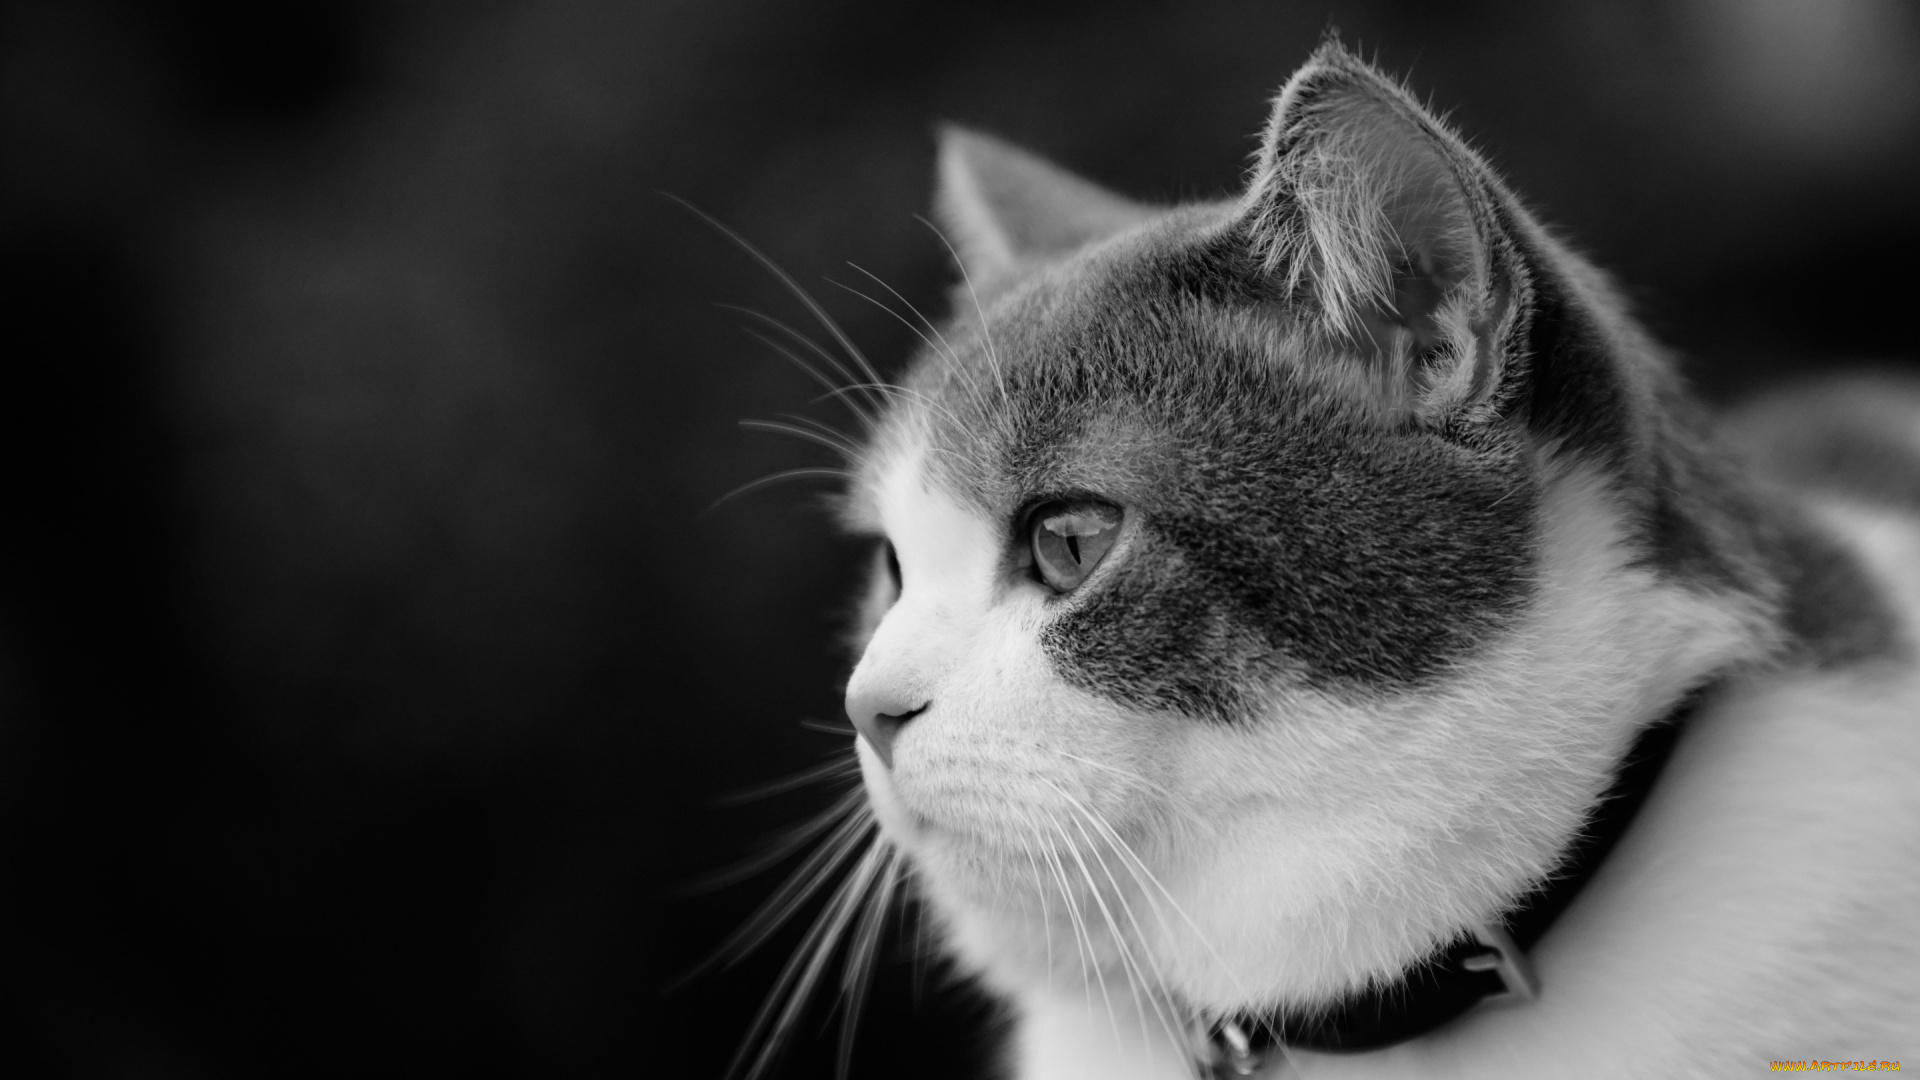 животные, коты, котейка, чёрно-белая, портрет, взгляд, кошка, ошейник, профиль, монохром, мордочка